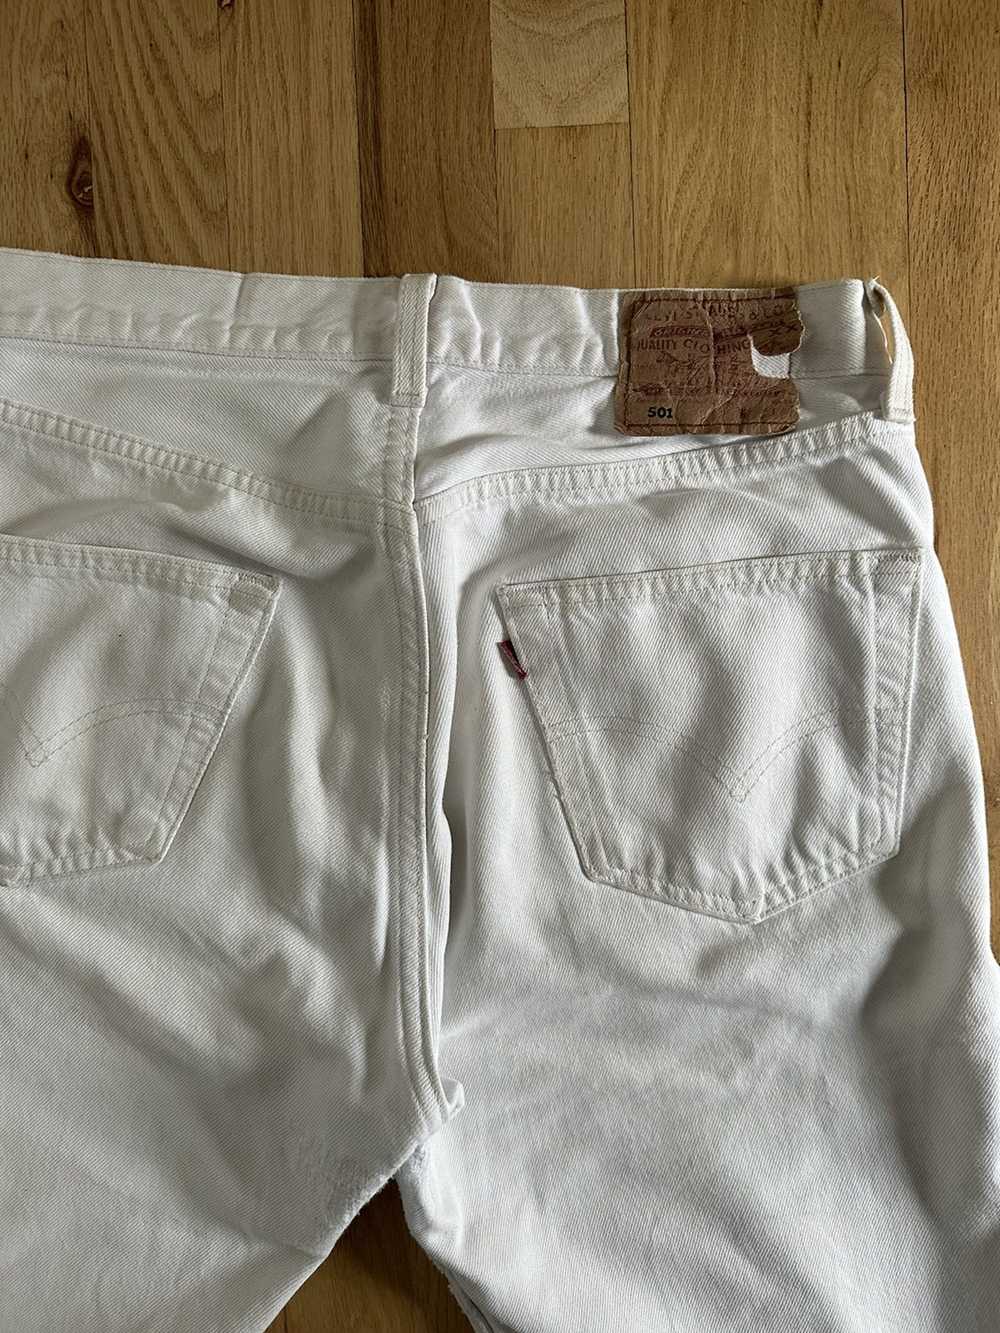 Levi's Vintage White Levi’s 501 Jeans - image 3